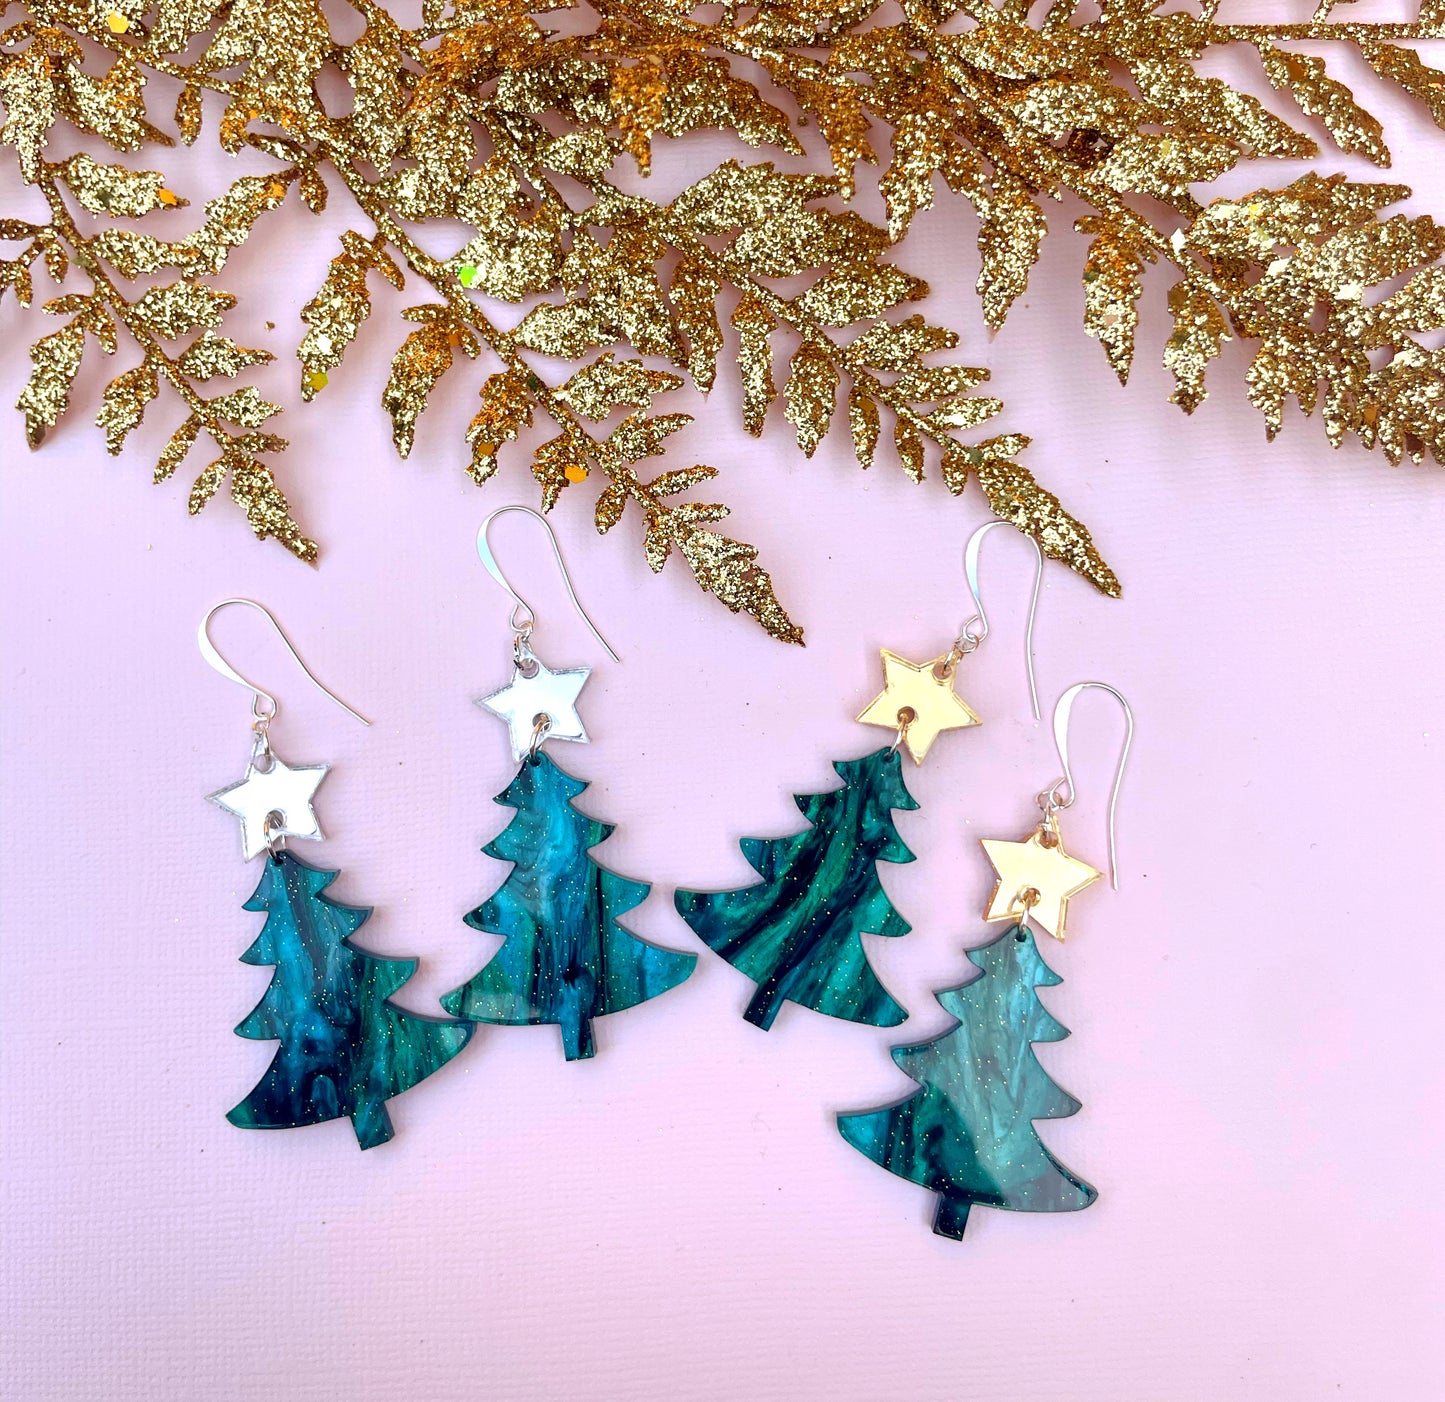 Retro Glam Christmas Tree Earrings